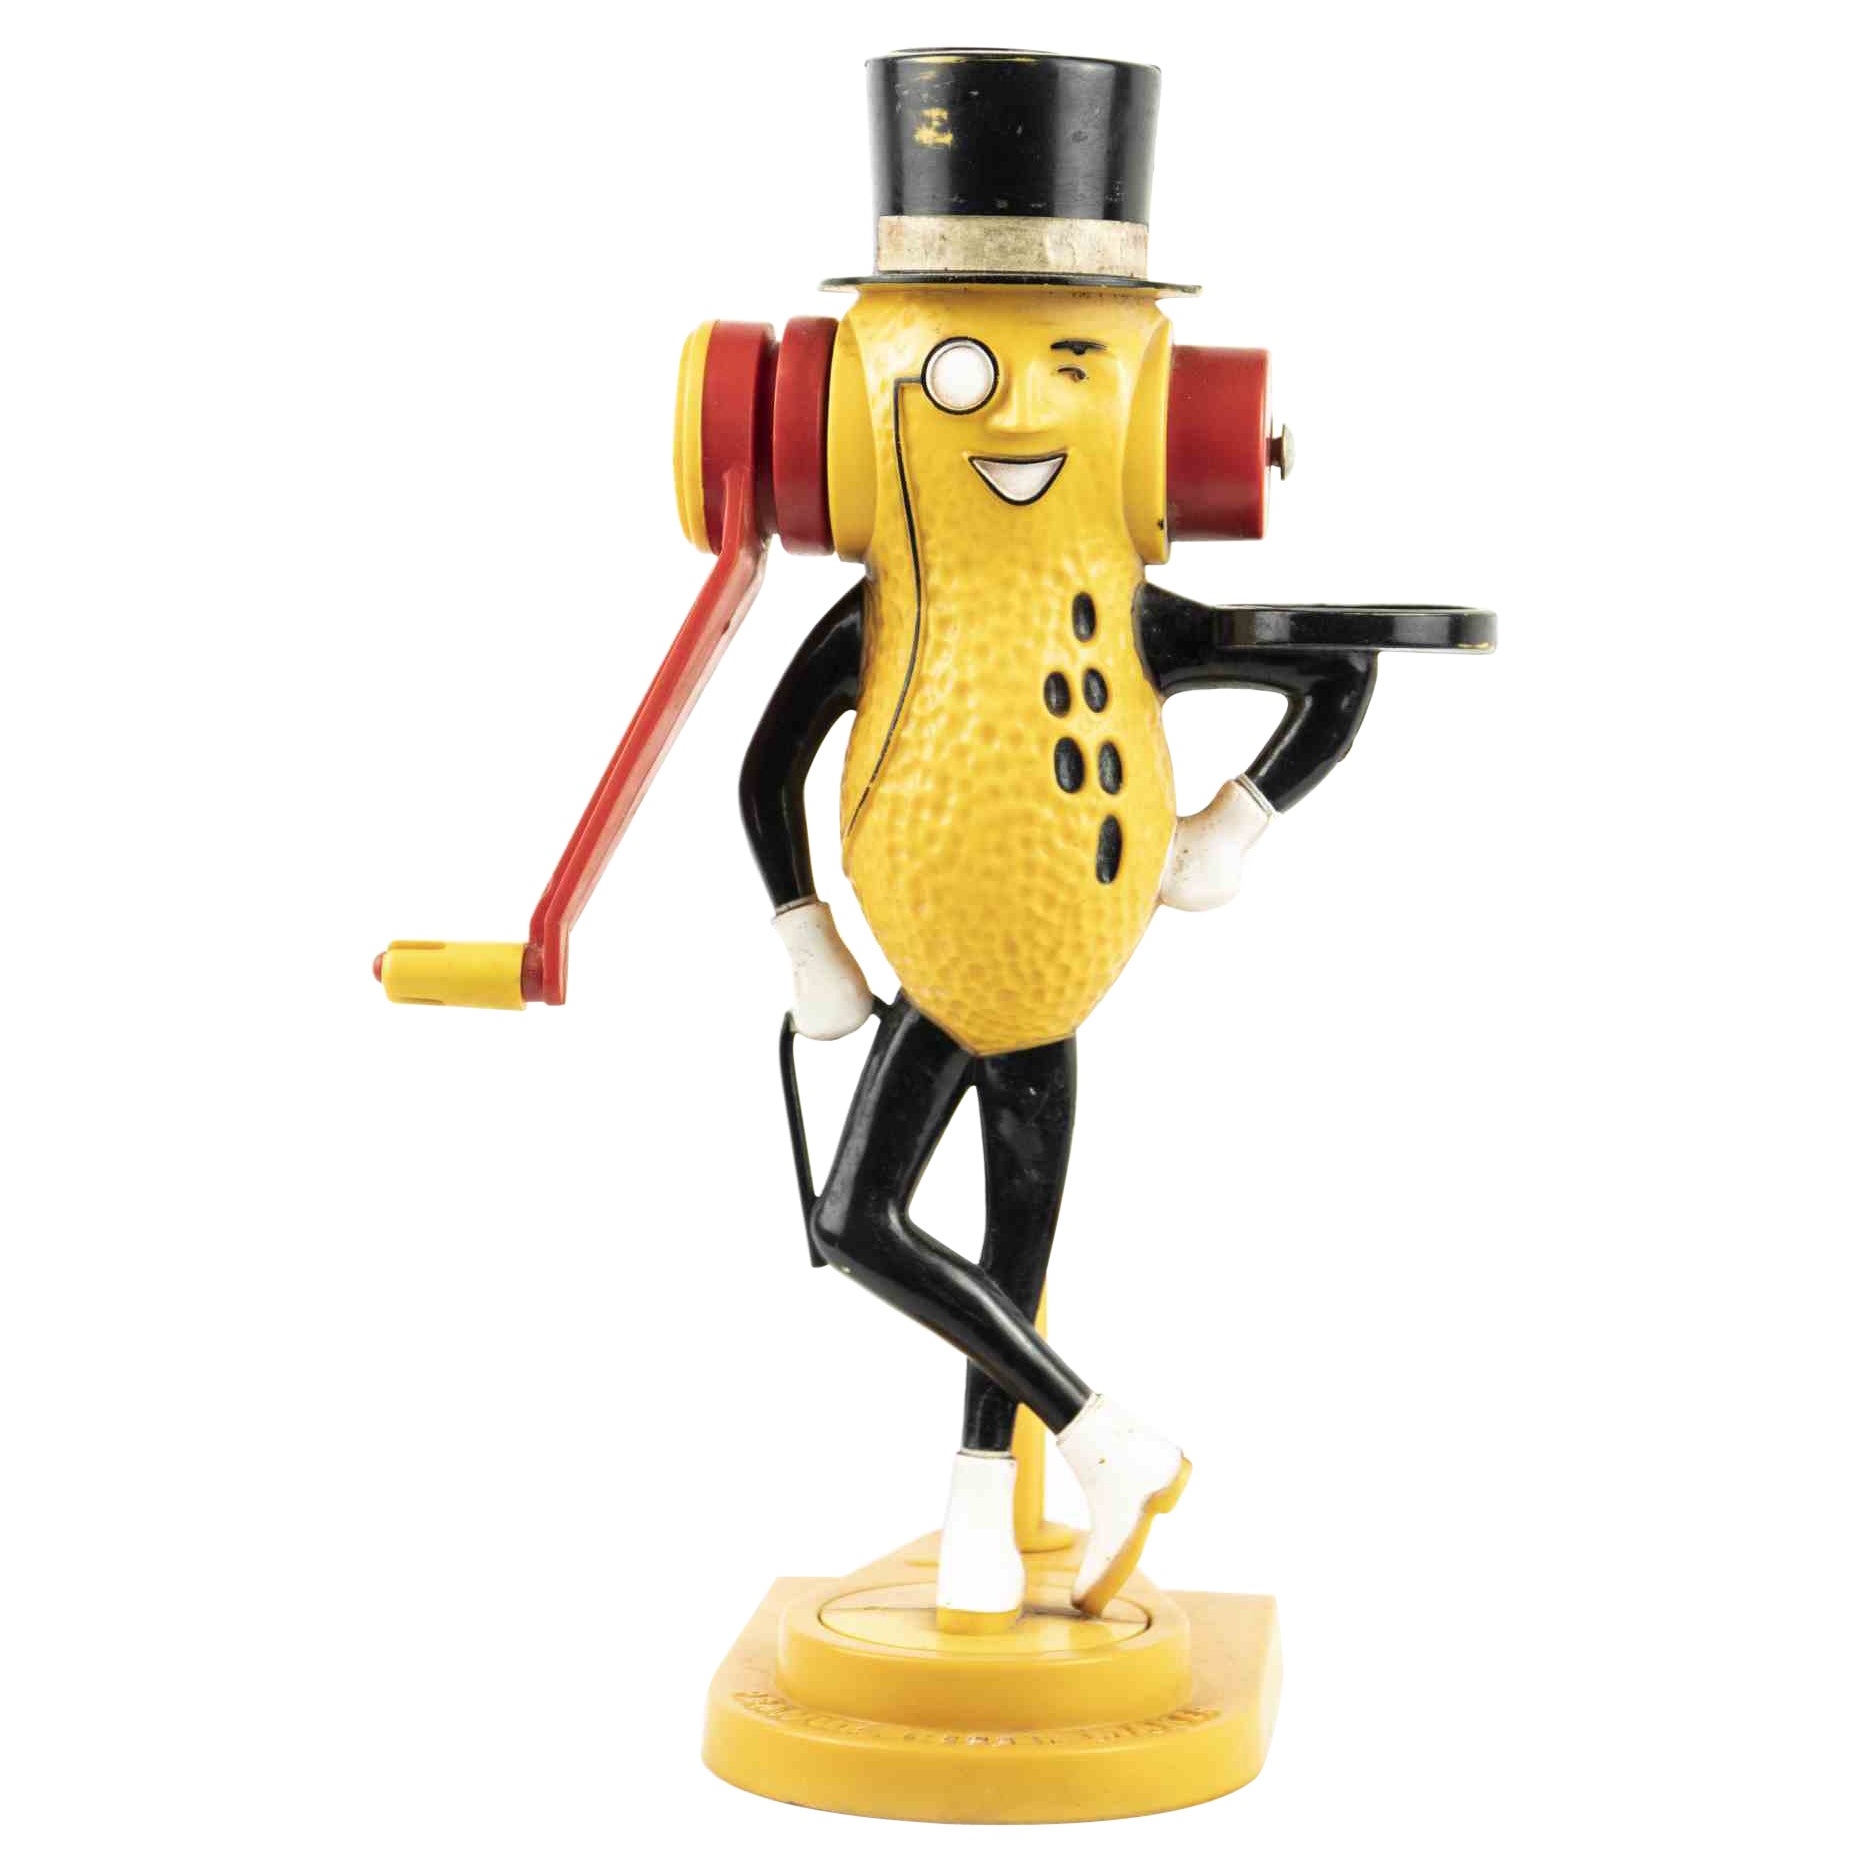 Mr.Peanut, Vintage Peanut Butter Maker, USA, Mid-20th Century